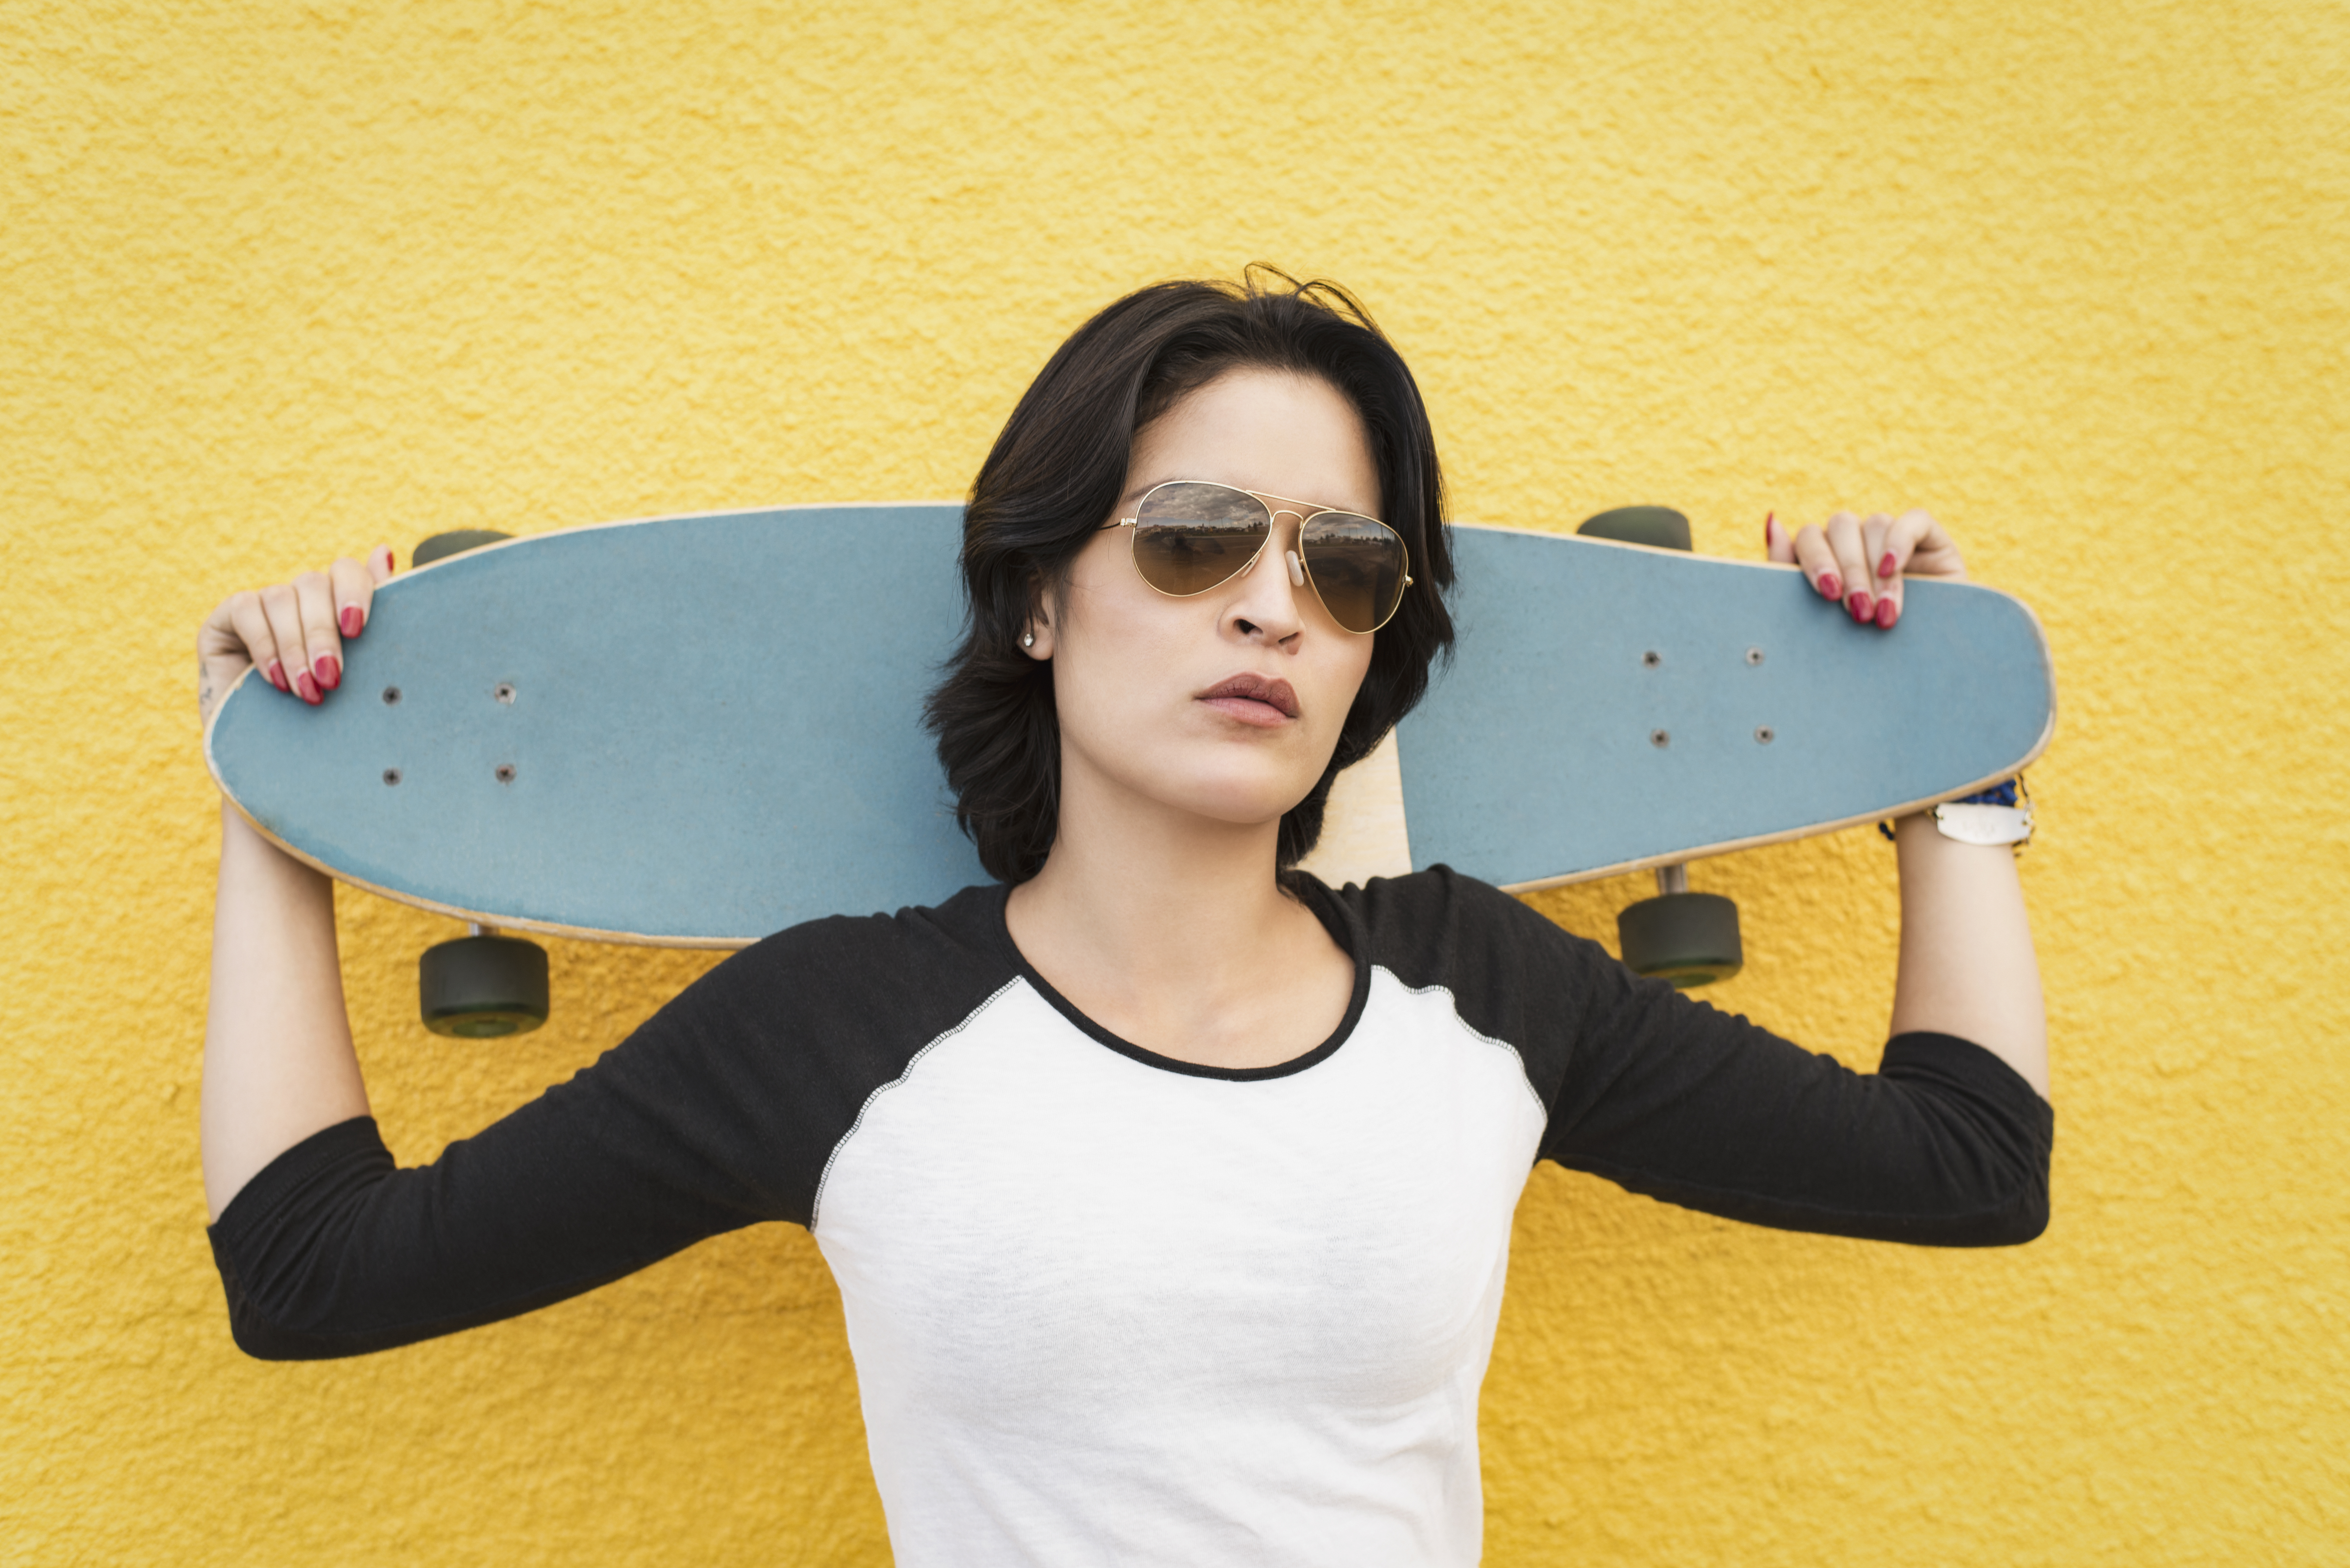 Jonge latina vrouw met skateboard voor een gele muur 